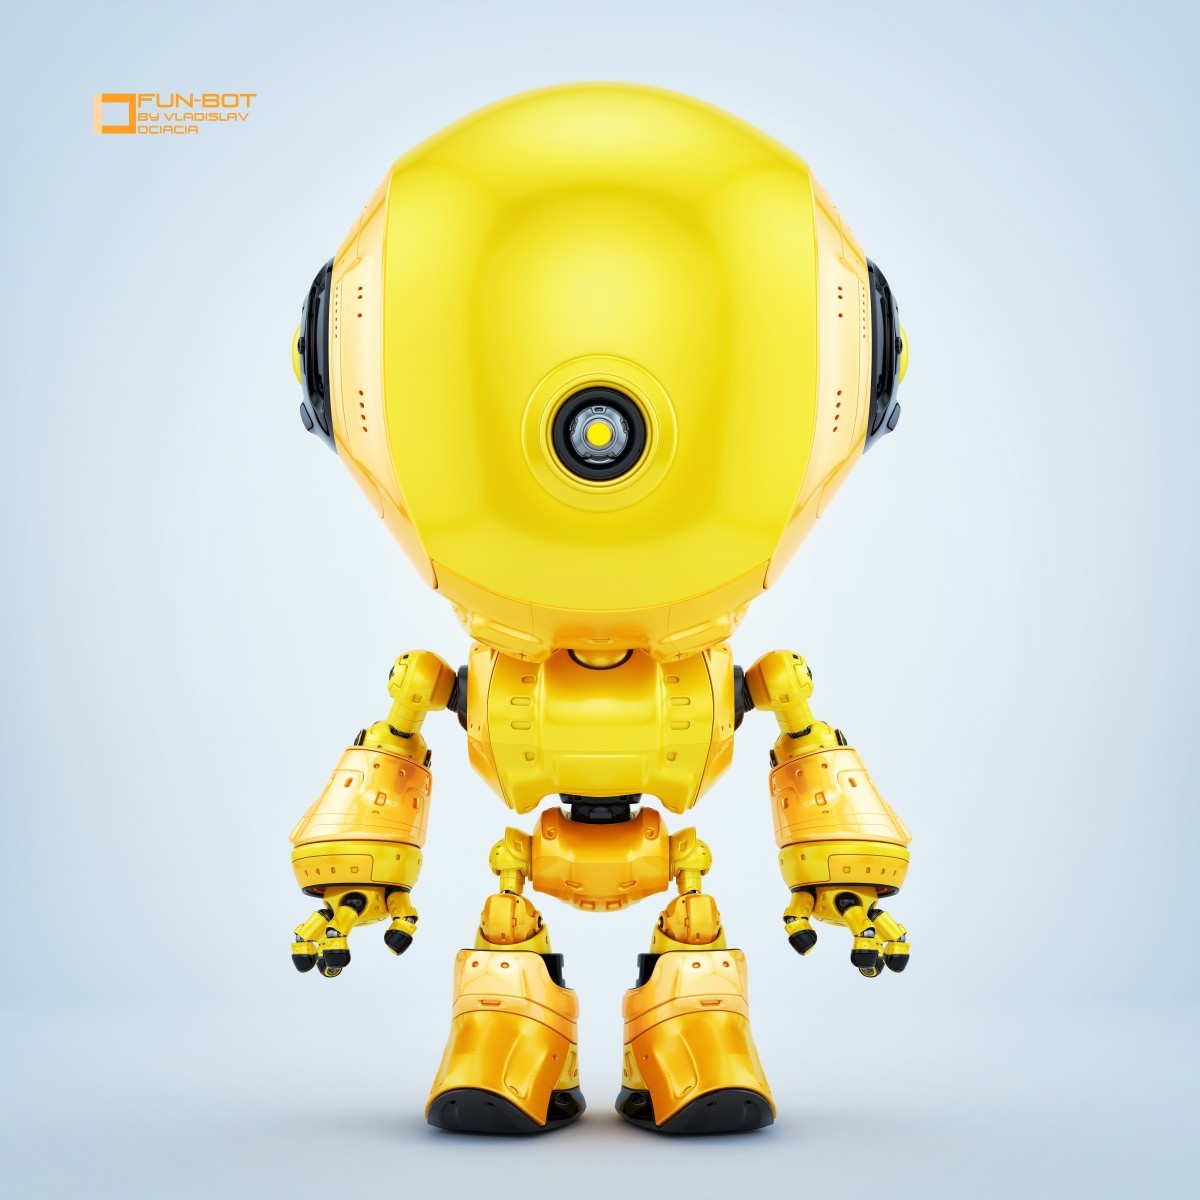 Малыш в желтом робот. Желтый робот. Робот желтый робот. Желтый тоббот. Желтый круглый робот.